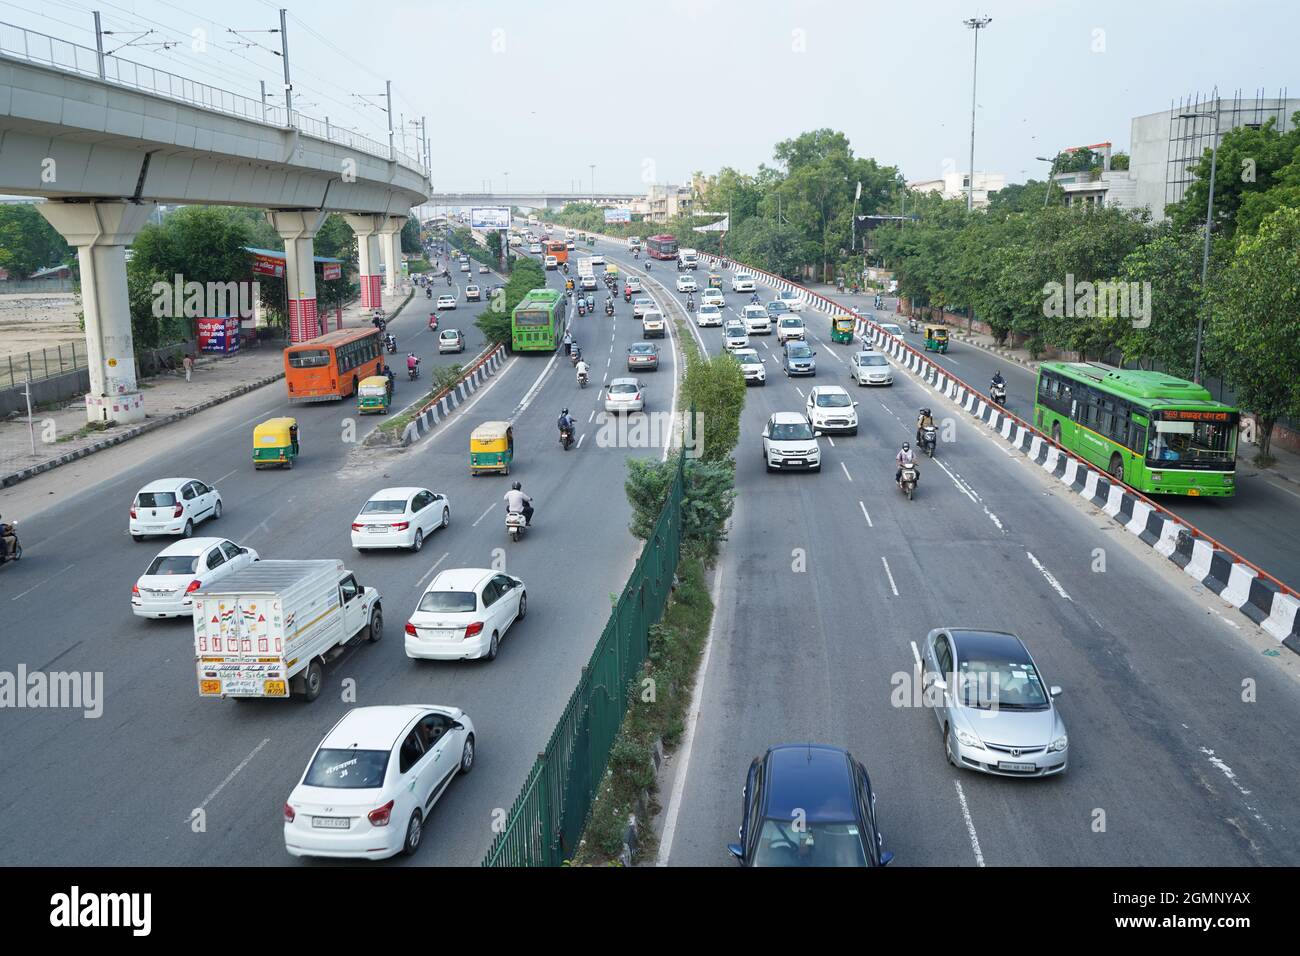 Delhi, india - September 9, 2020: traffic running on two lane road in new delhi, india Stock Photo